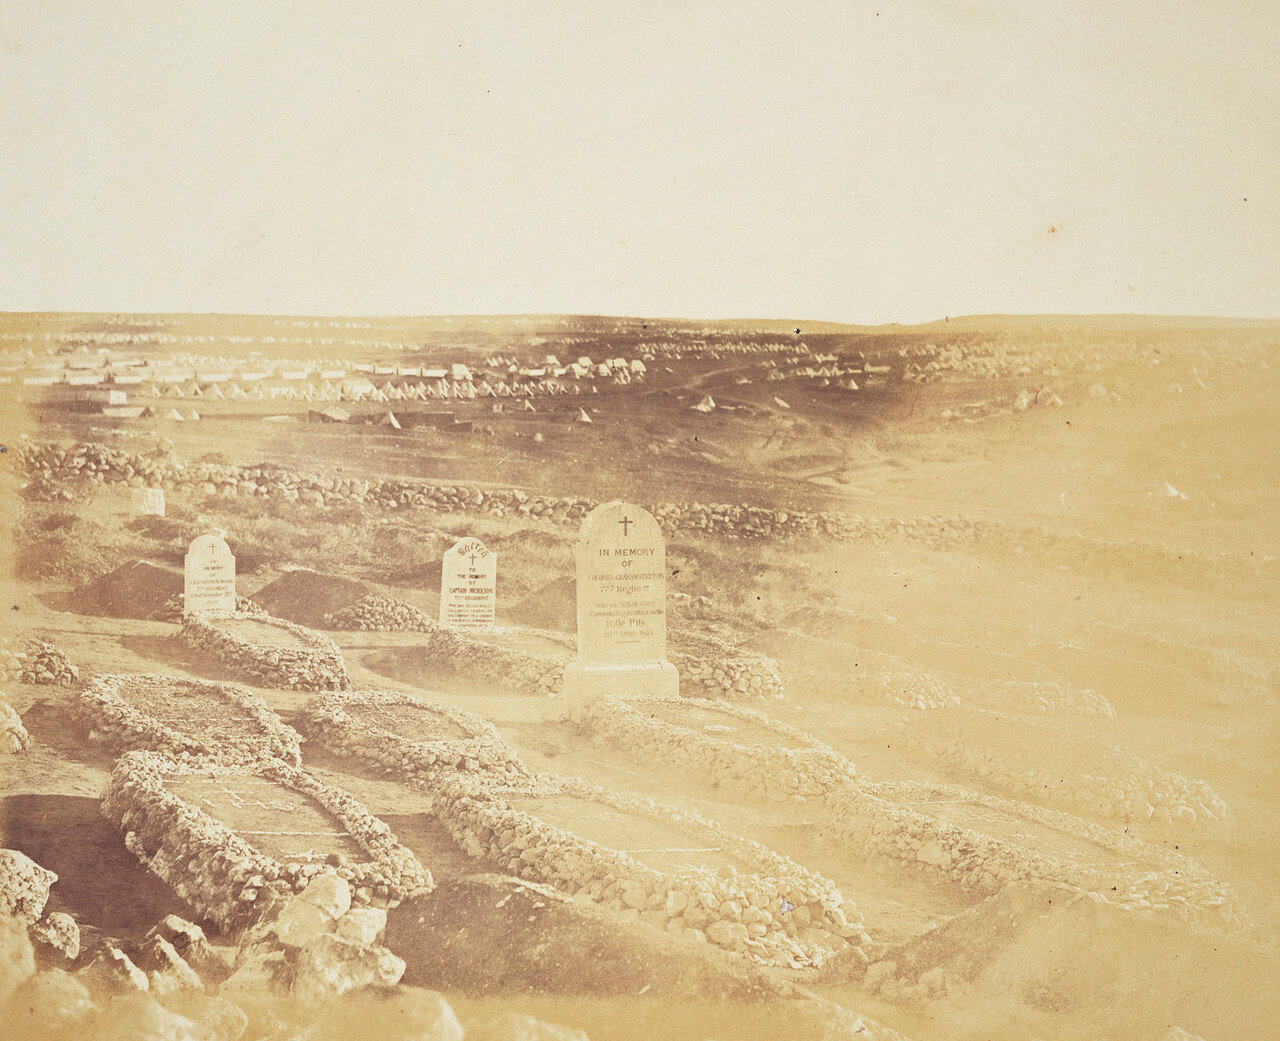 Могилы 77-го полка на британском кладбище возле Севастополя